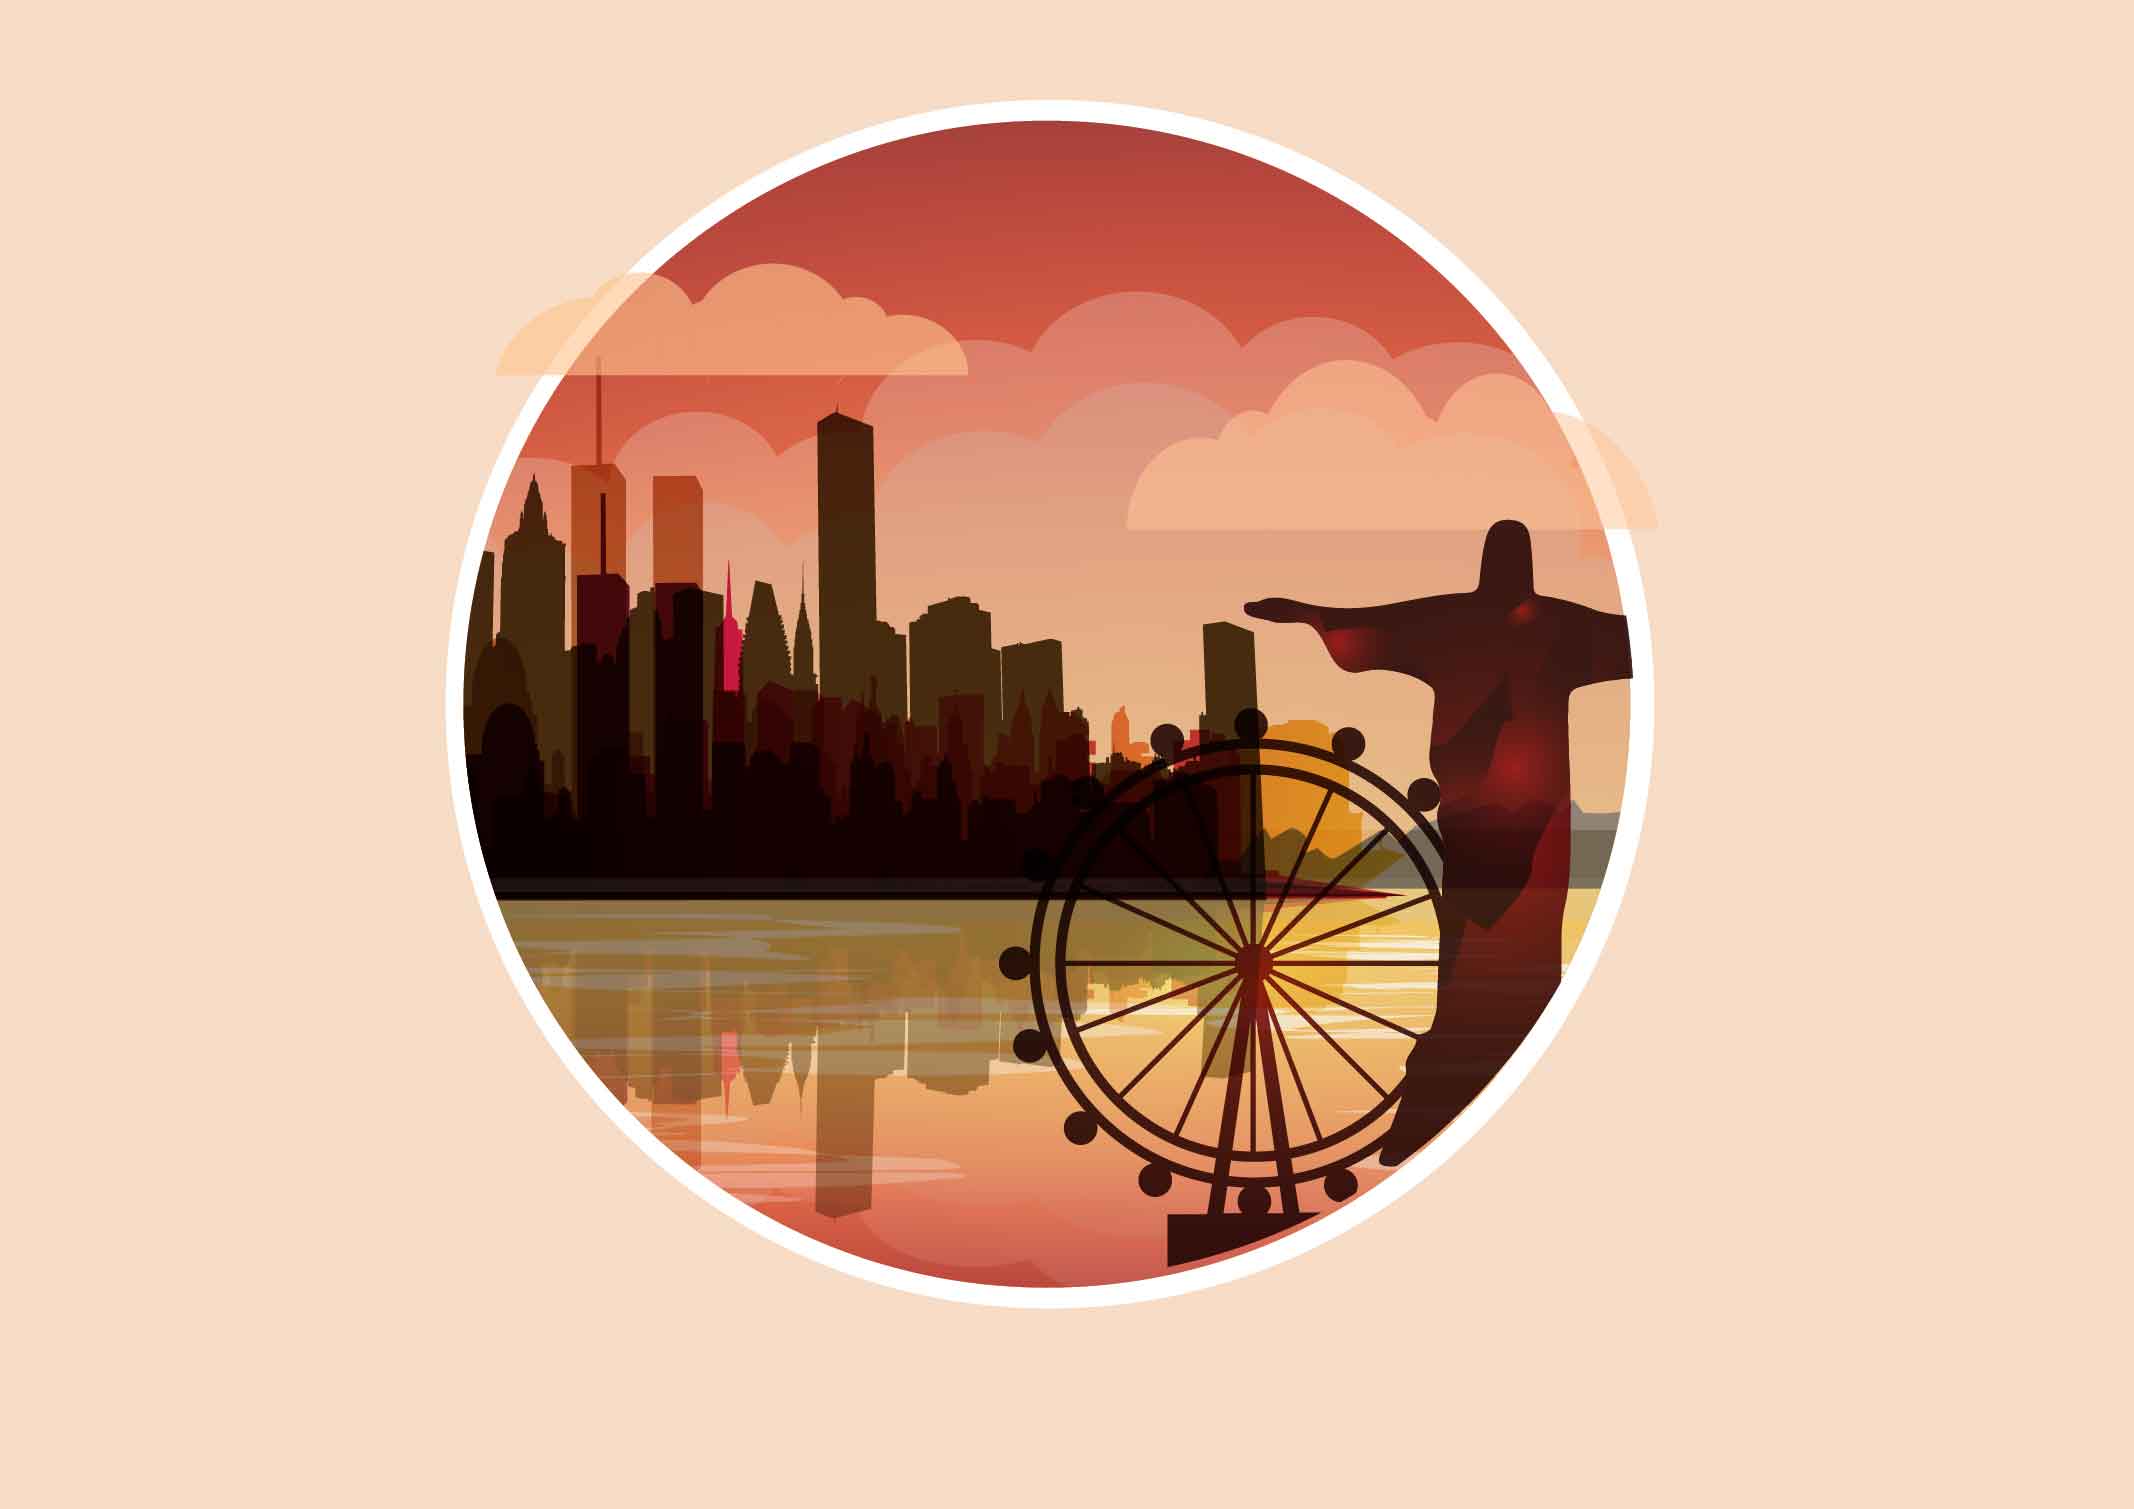 天津经济技术开发区被认定为“天津市全域旅游示范区”